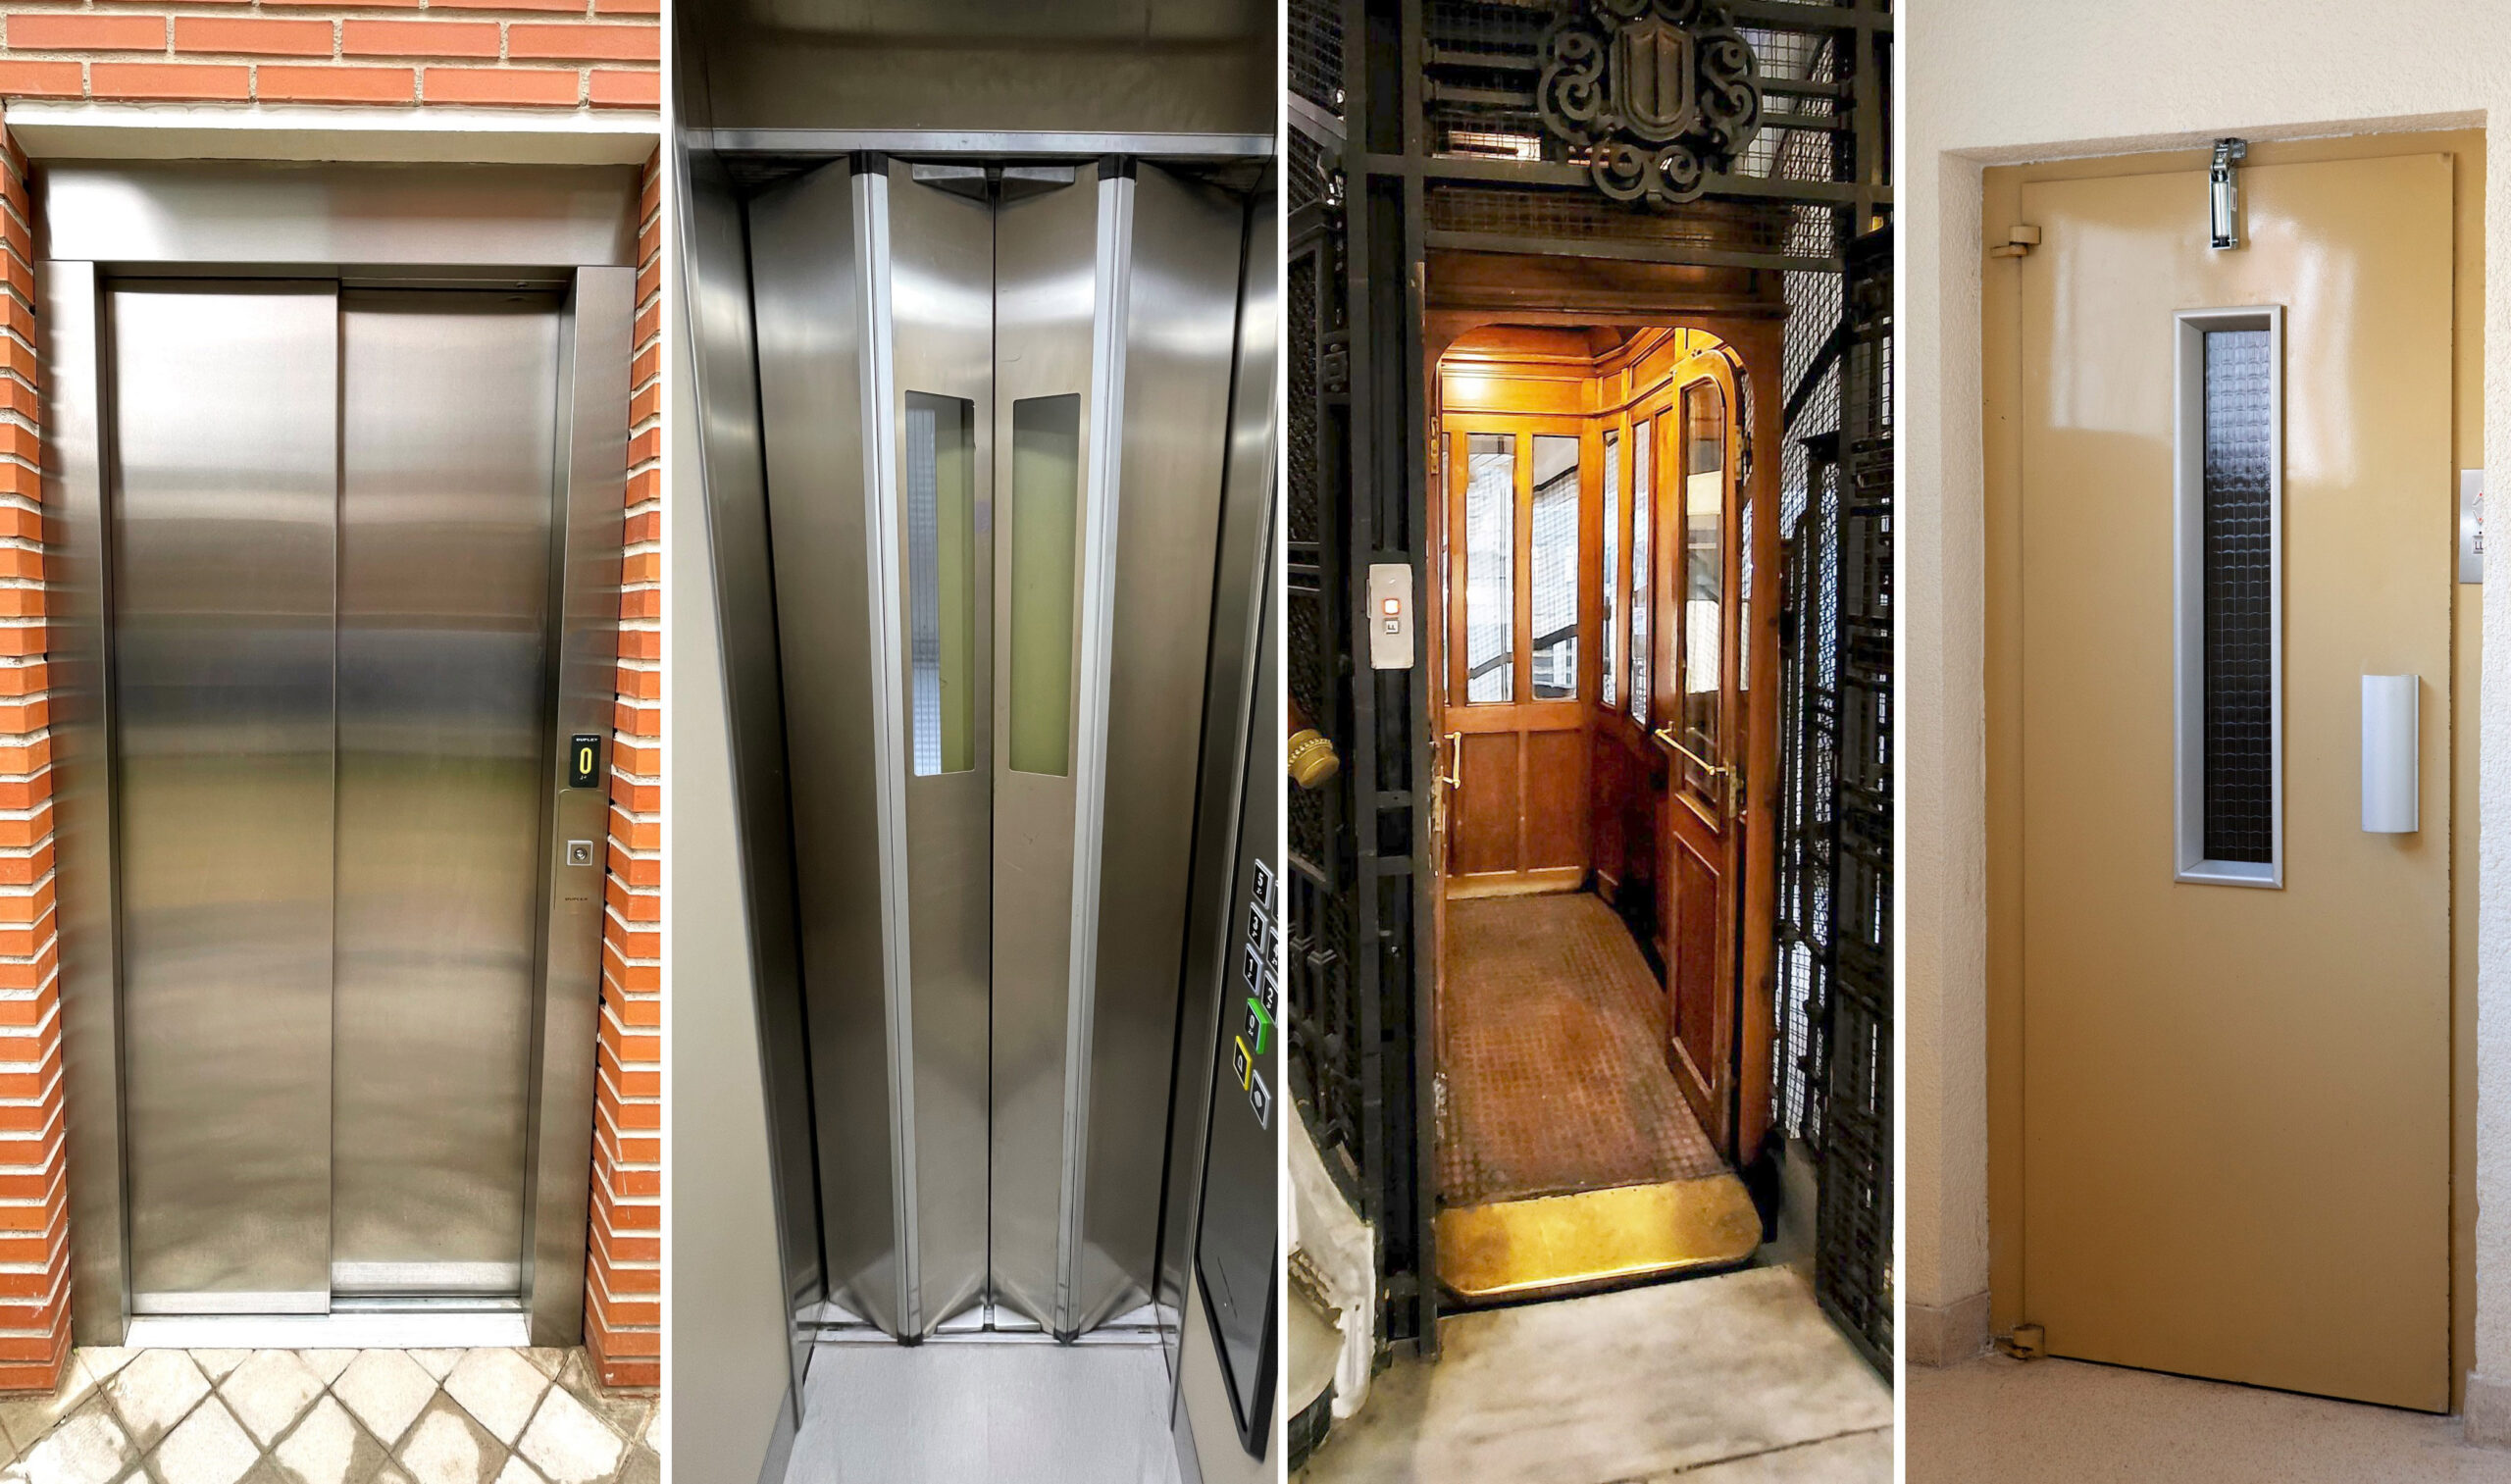 Ejemplos de puertas automáticas, puertas tipo bus, puertas manuales y puertas semiautomáticas de ascensores